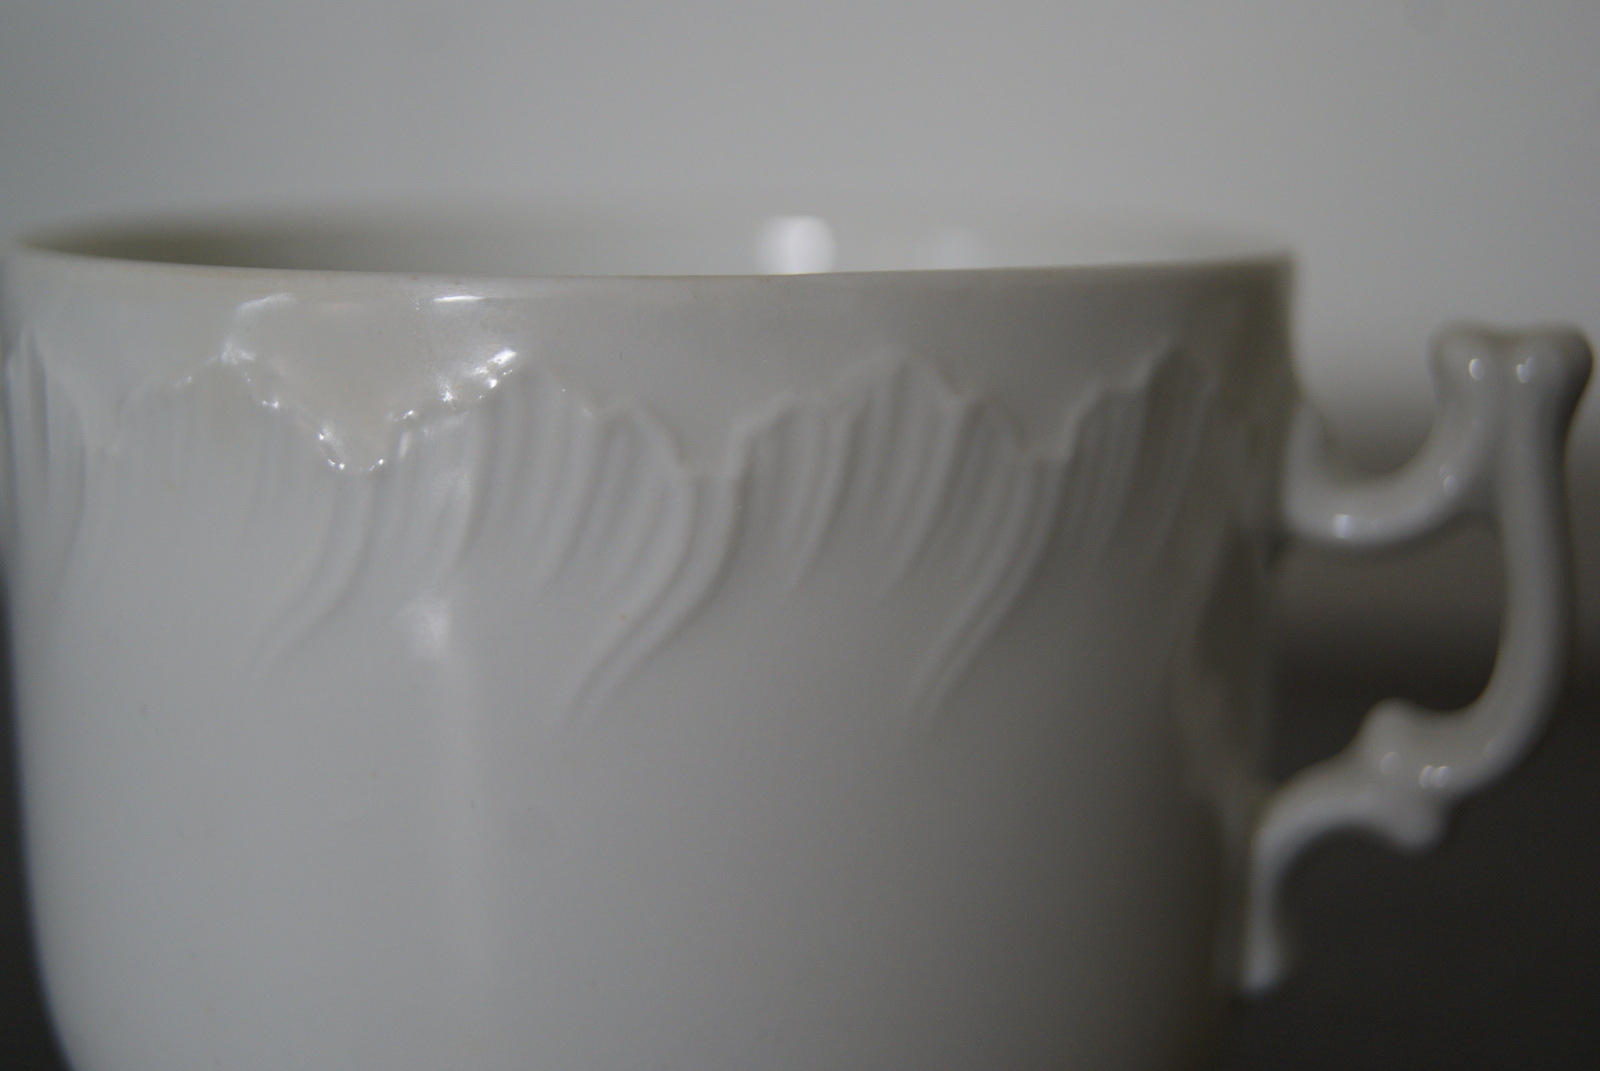 Porsgrund kopp med skål hvit med relief